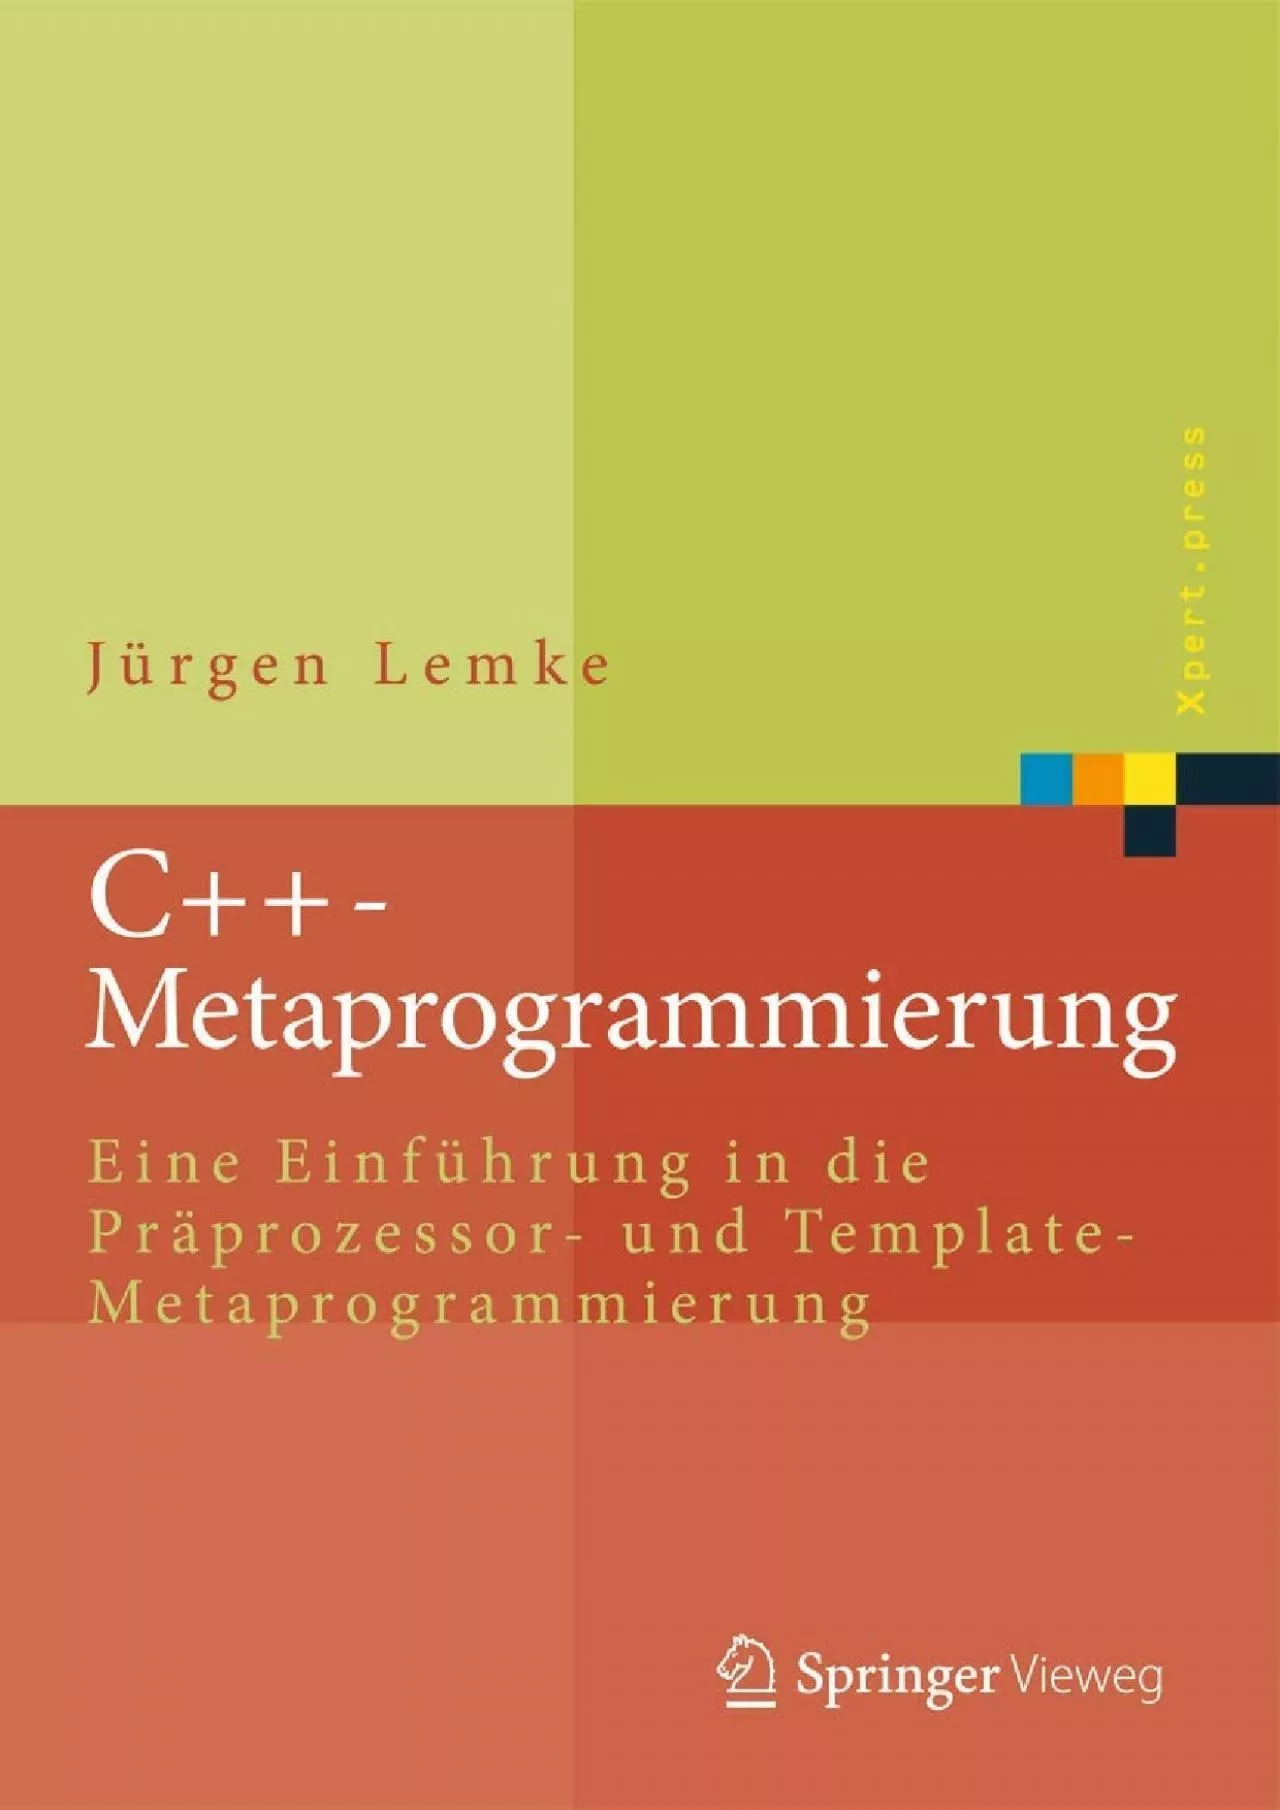 [FREE]-C++-Metaprogrammierung: Eine Einführung in die Präprozessor- und Template-Metaprogrammierung